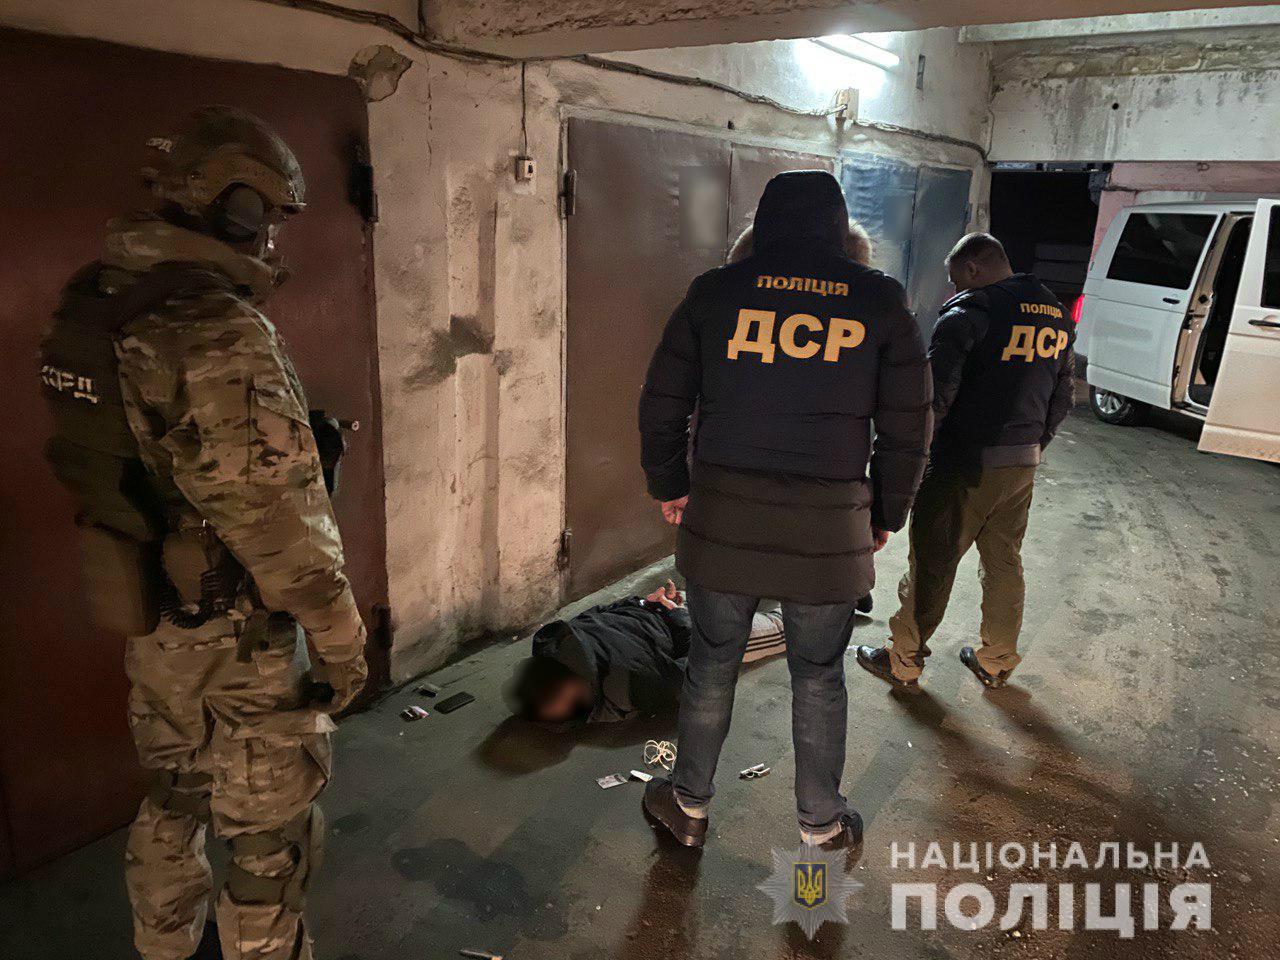 Харьковская полиция обнаружила оружие и боеприпасы у группы граждан (фото)